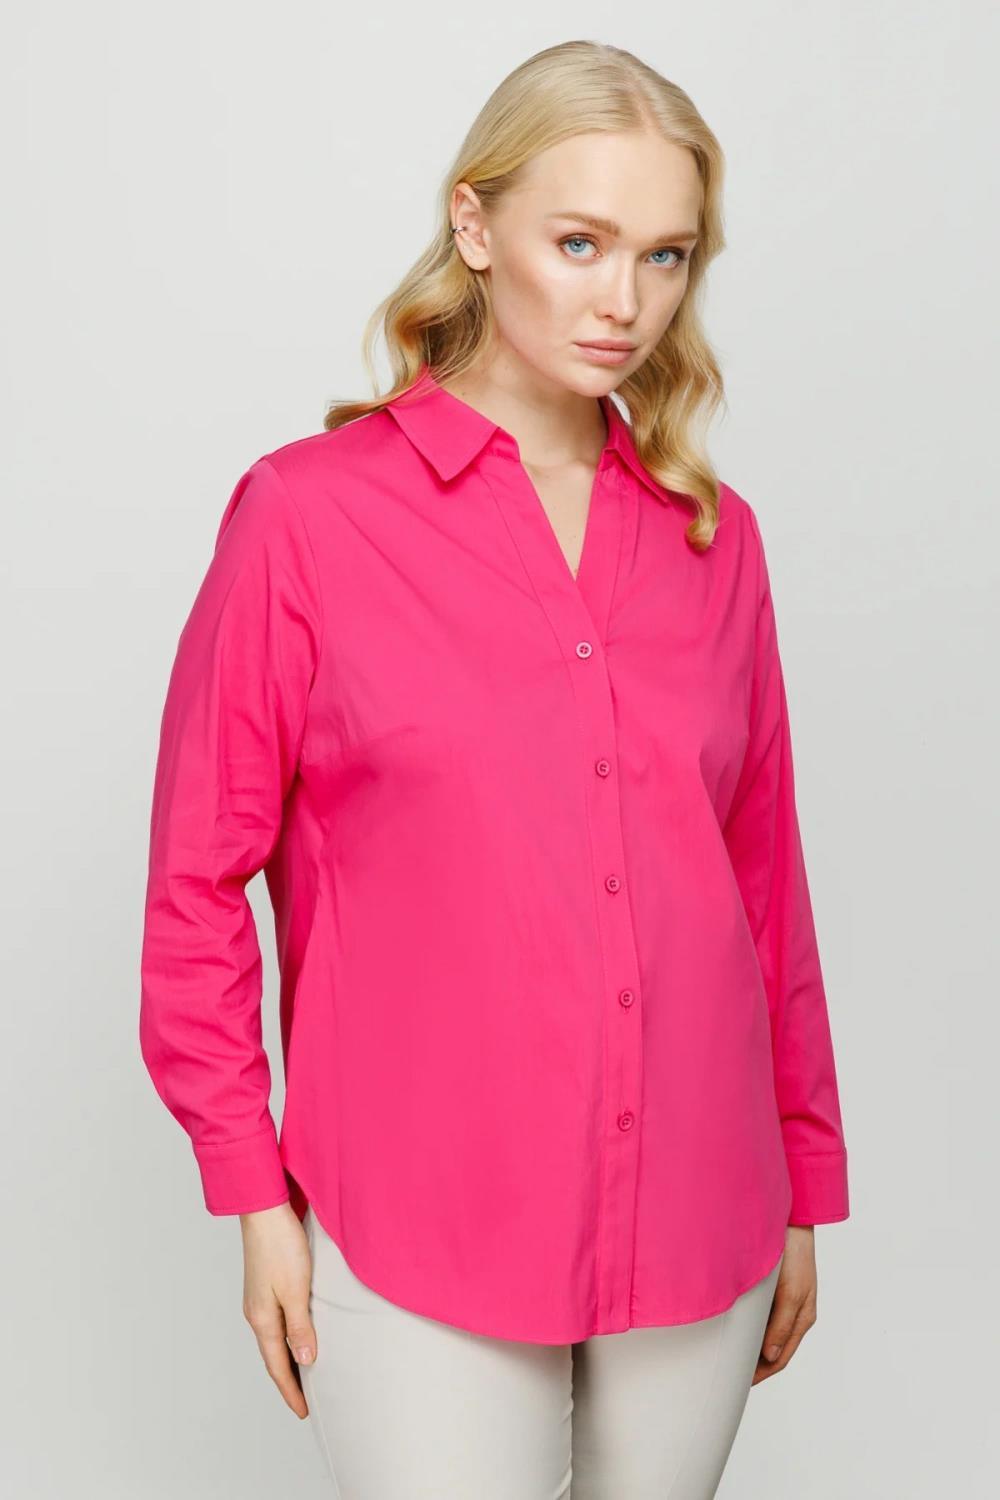 Ekol Klasik Kadın Gömlek - Eser Giyim